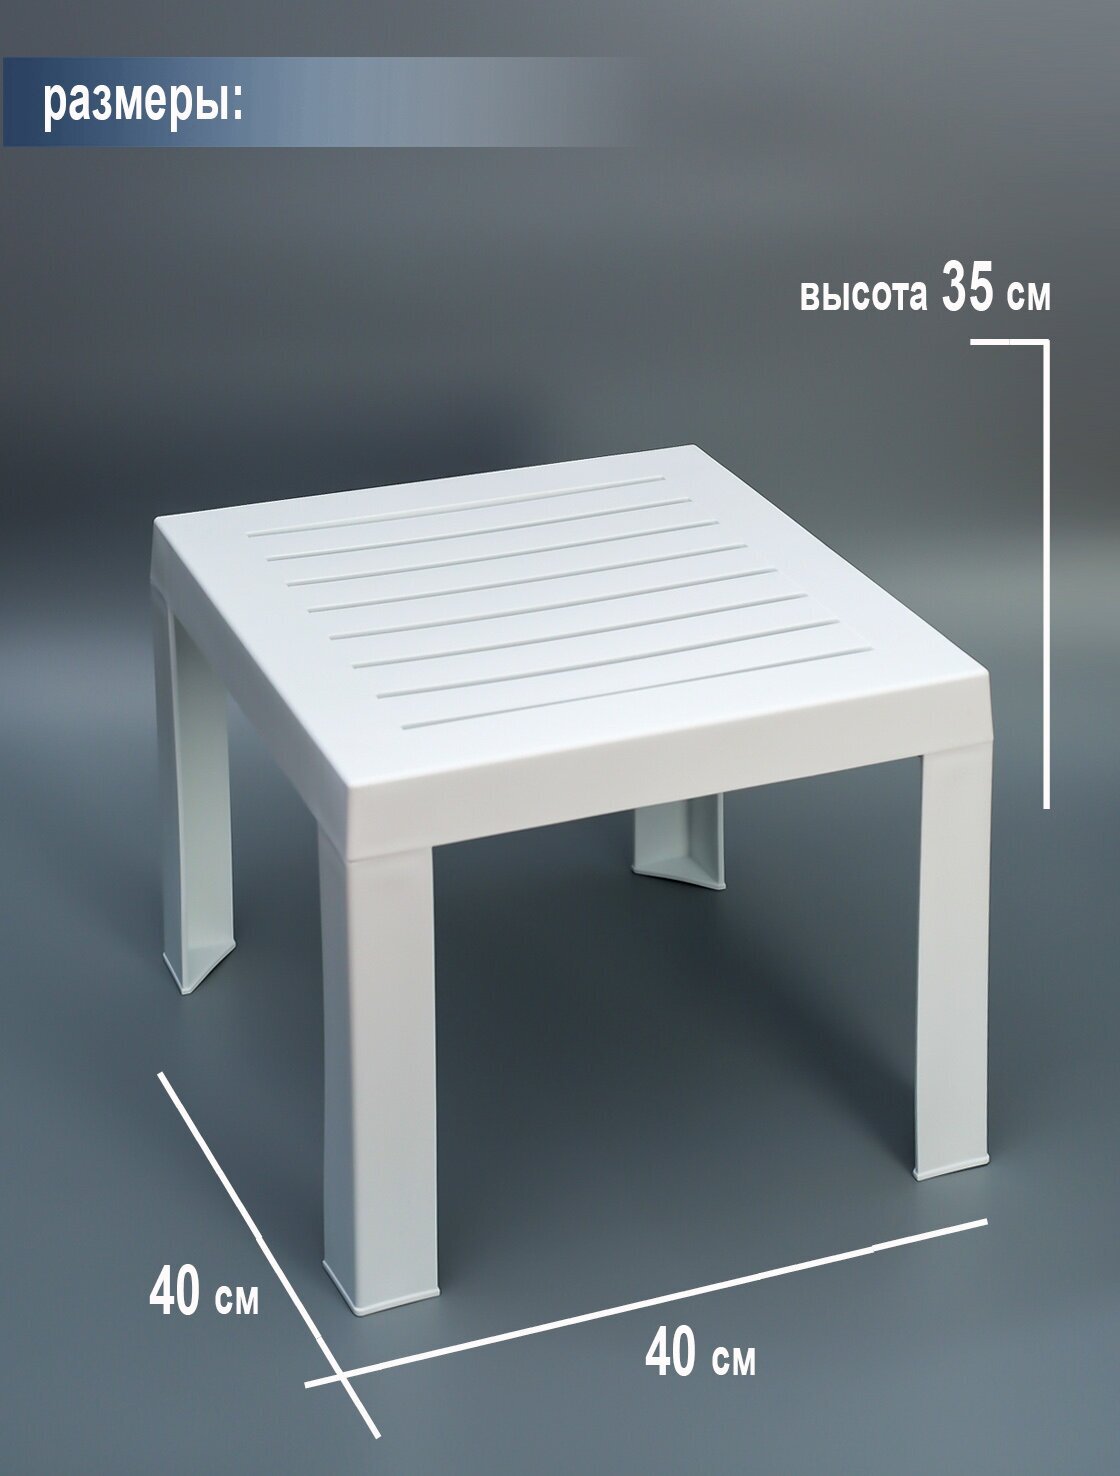 Столик к шезлонгу пластиковый Набор из 7 Штук. Elfplast размером 35х40х40, практичный садовый столик съемными ножками - фотография № 5